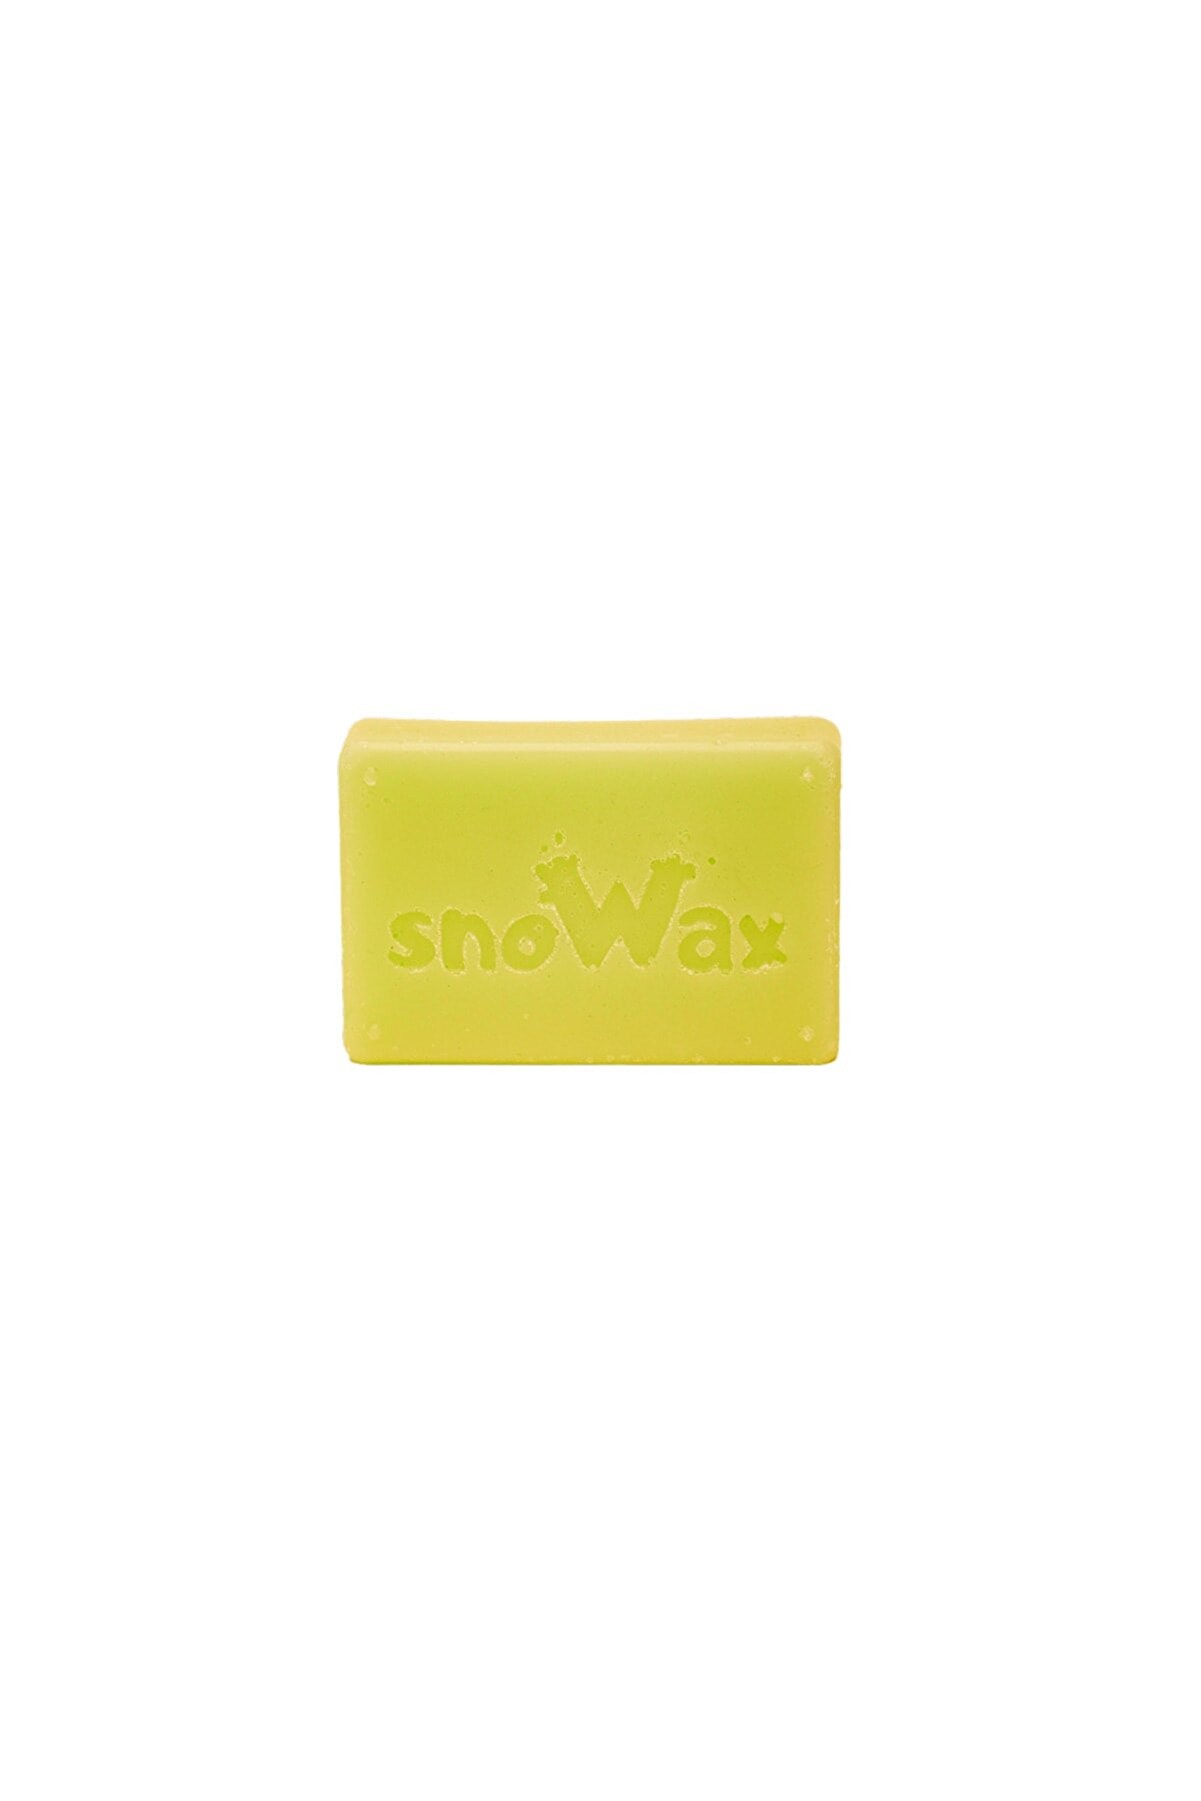 SnoWax Sıcak Uygulama Wax'ı